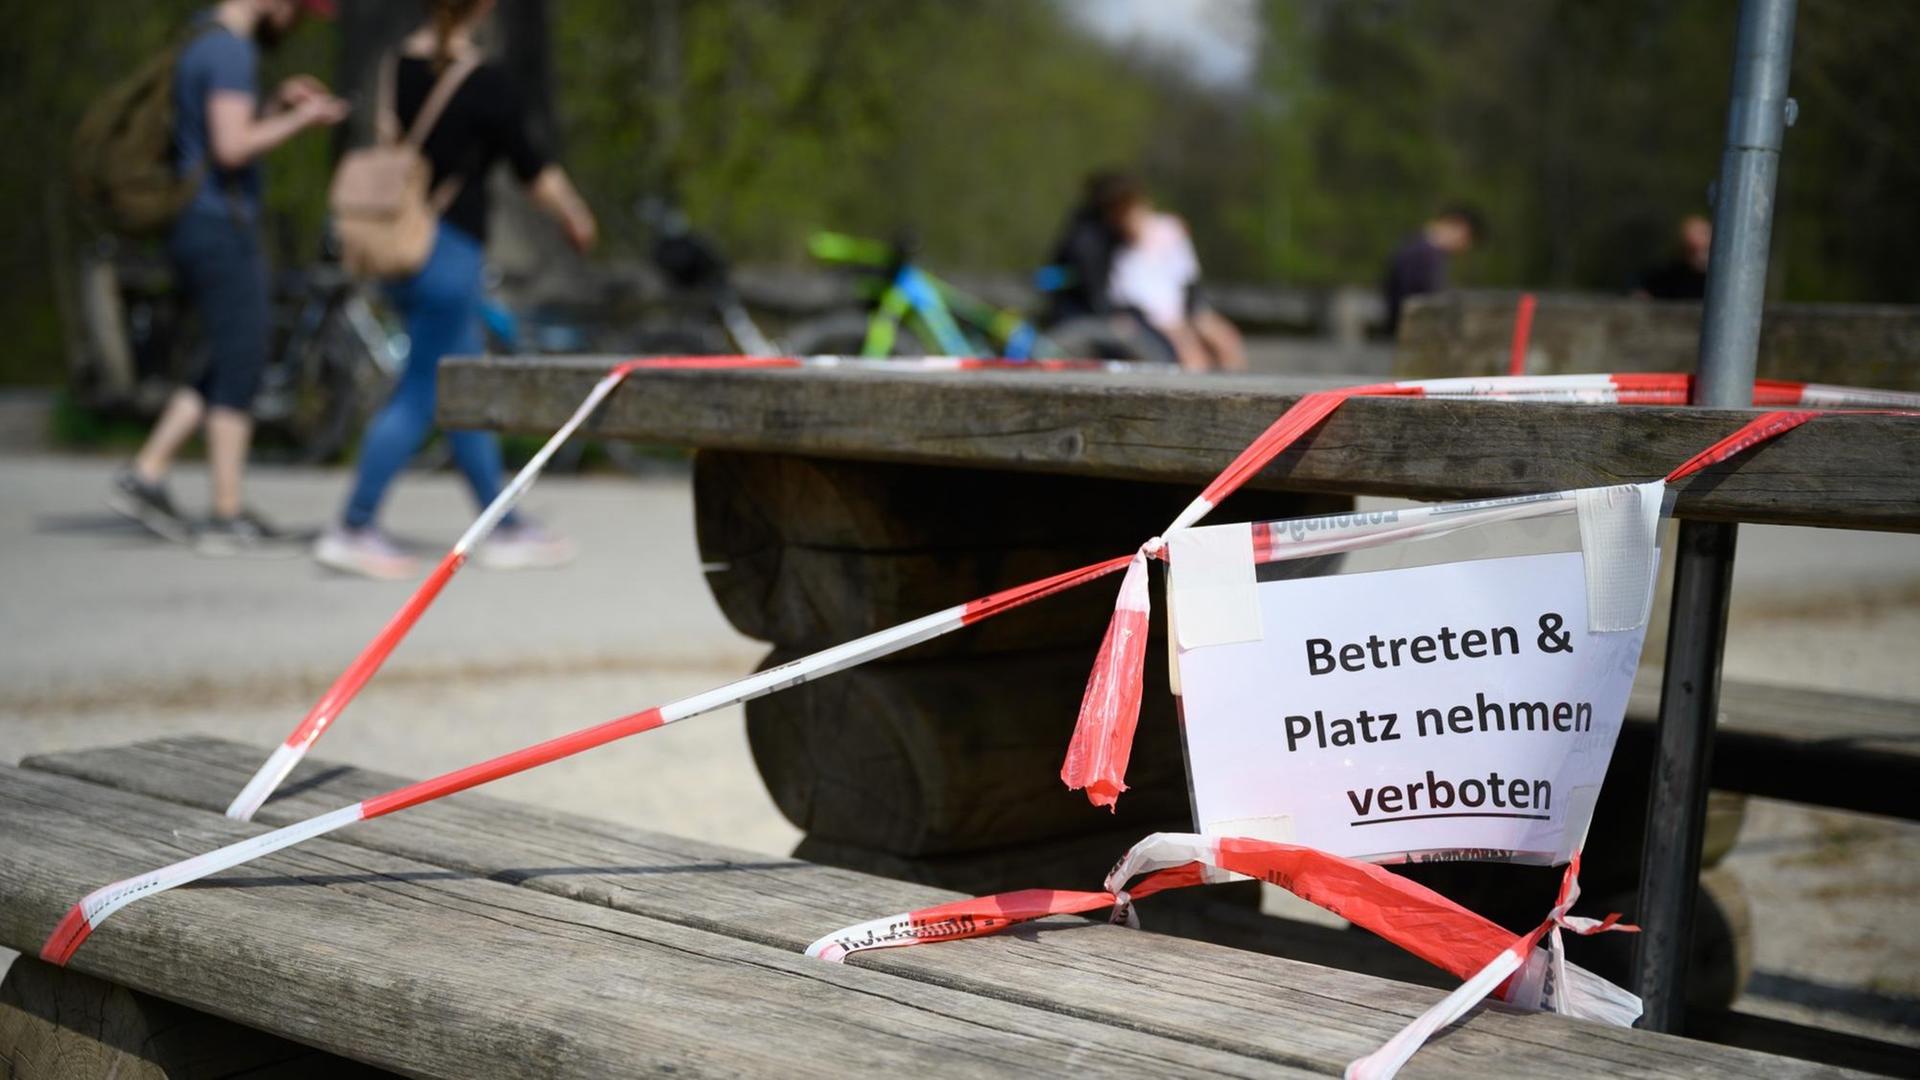 Ein Schild mit der Aufschrift "Betreten & Platz nehmen verboten" hängt am 13.04.2020 am Bärenschlössle, einem beliebten Ausflugsziel in Stuttgart, an einer Bank.